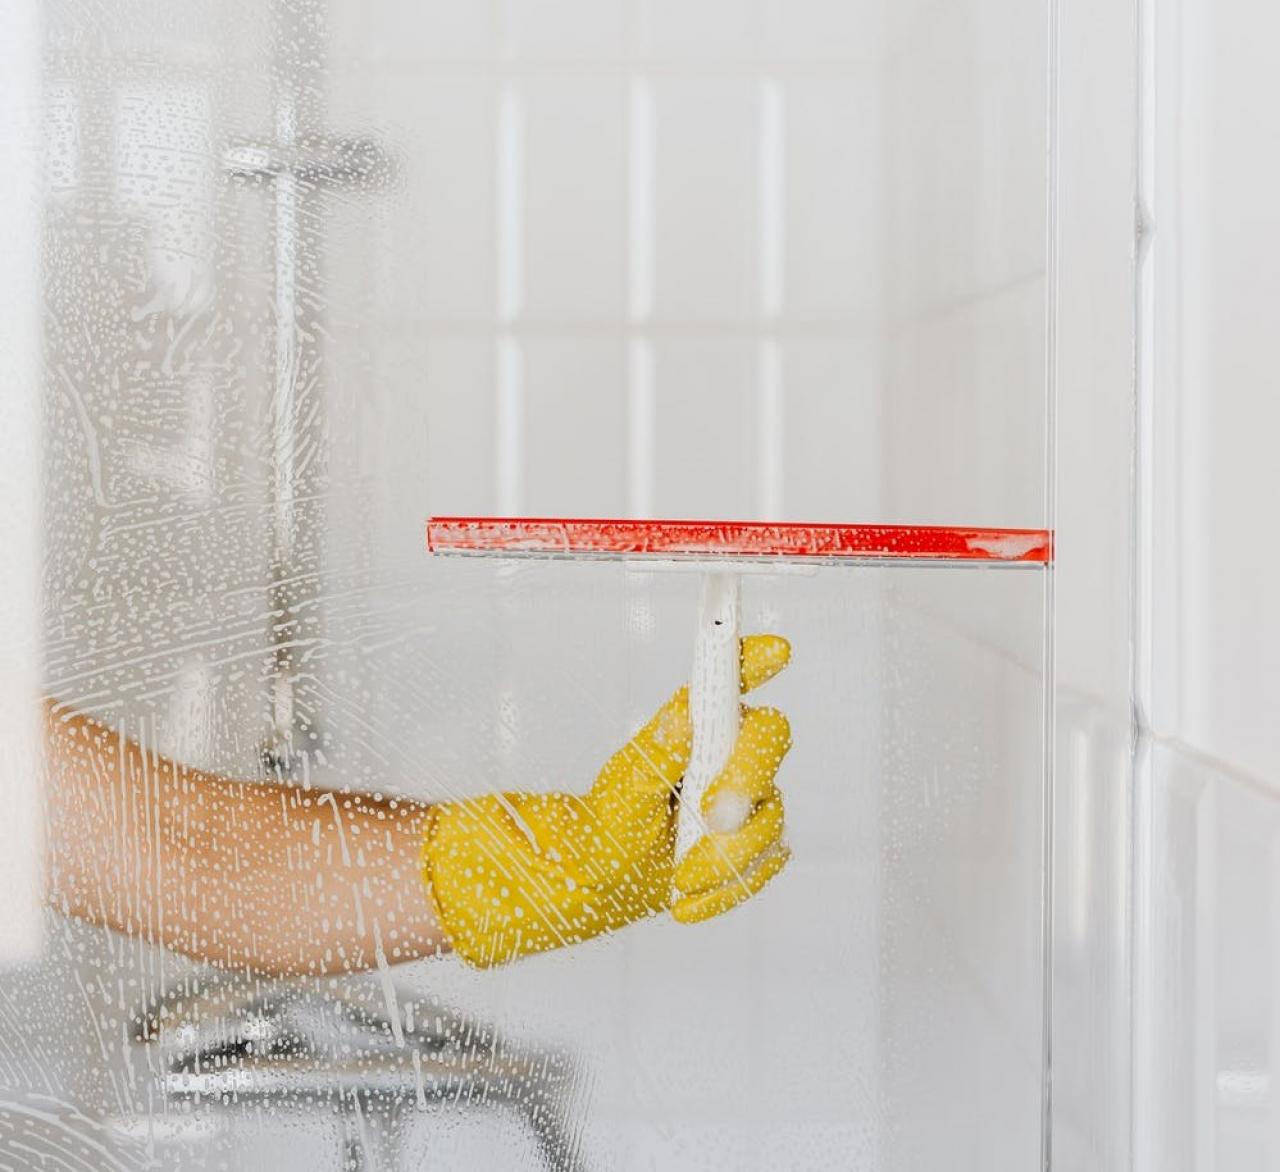 Pulisci vetri raschietto per pulire le gocce del cristallo box doccia